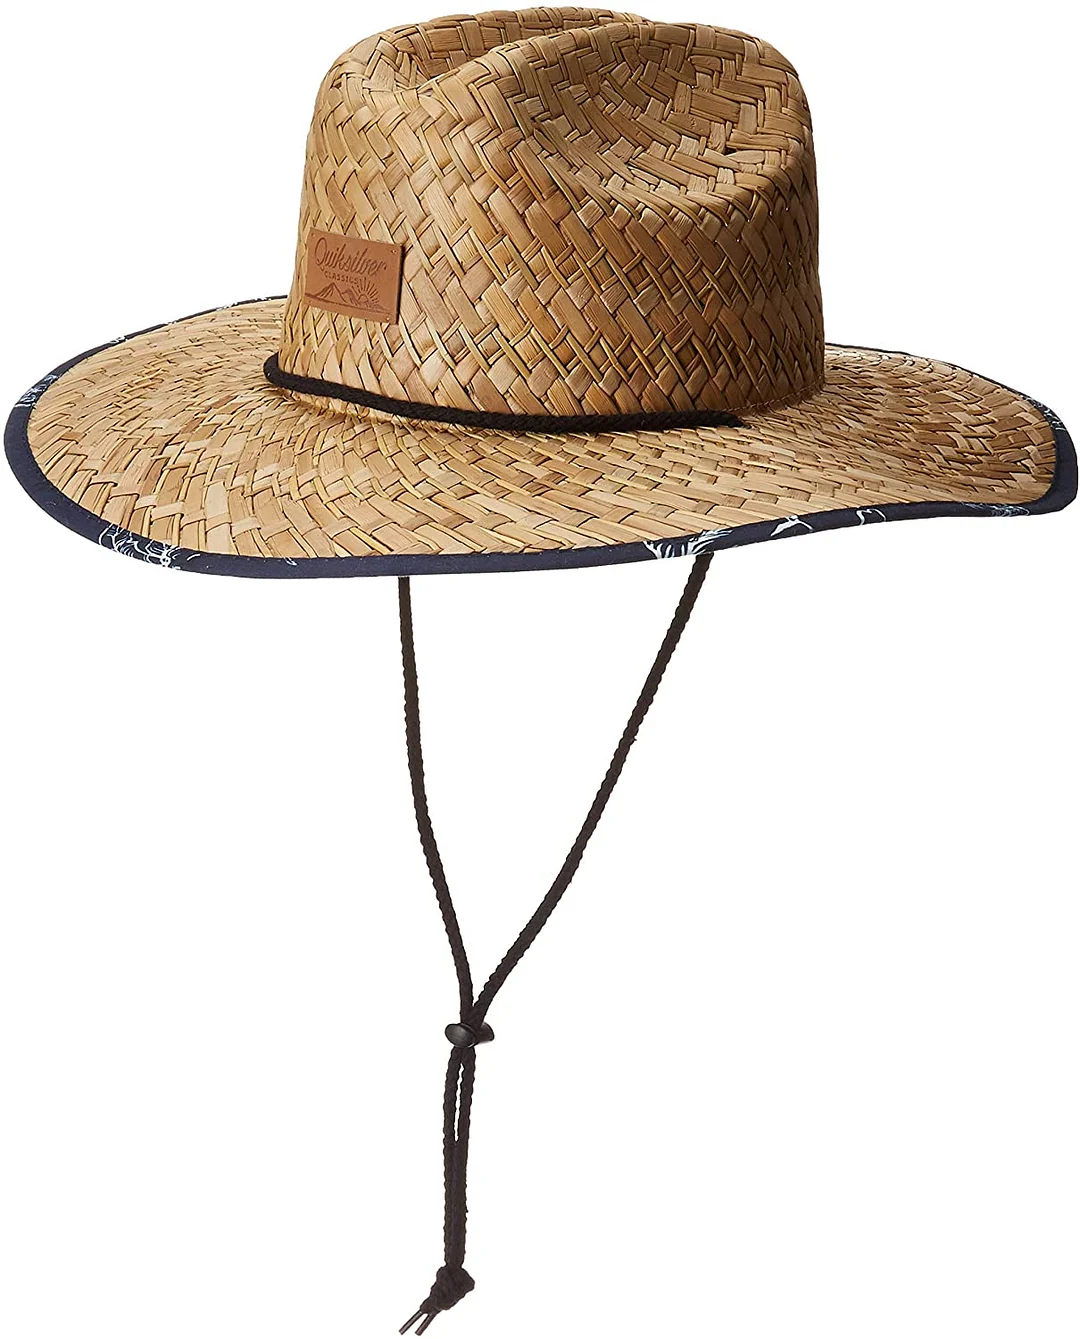 Men's Outsider Waterman Hat